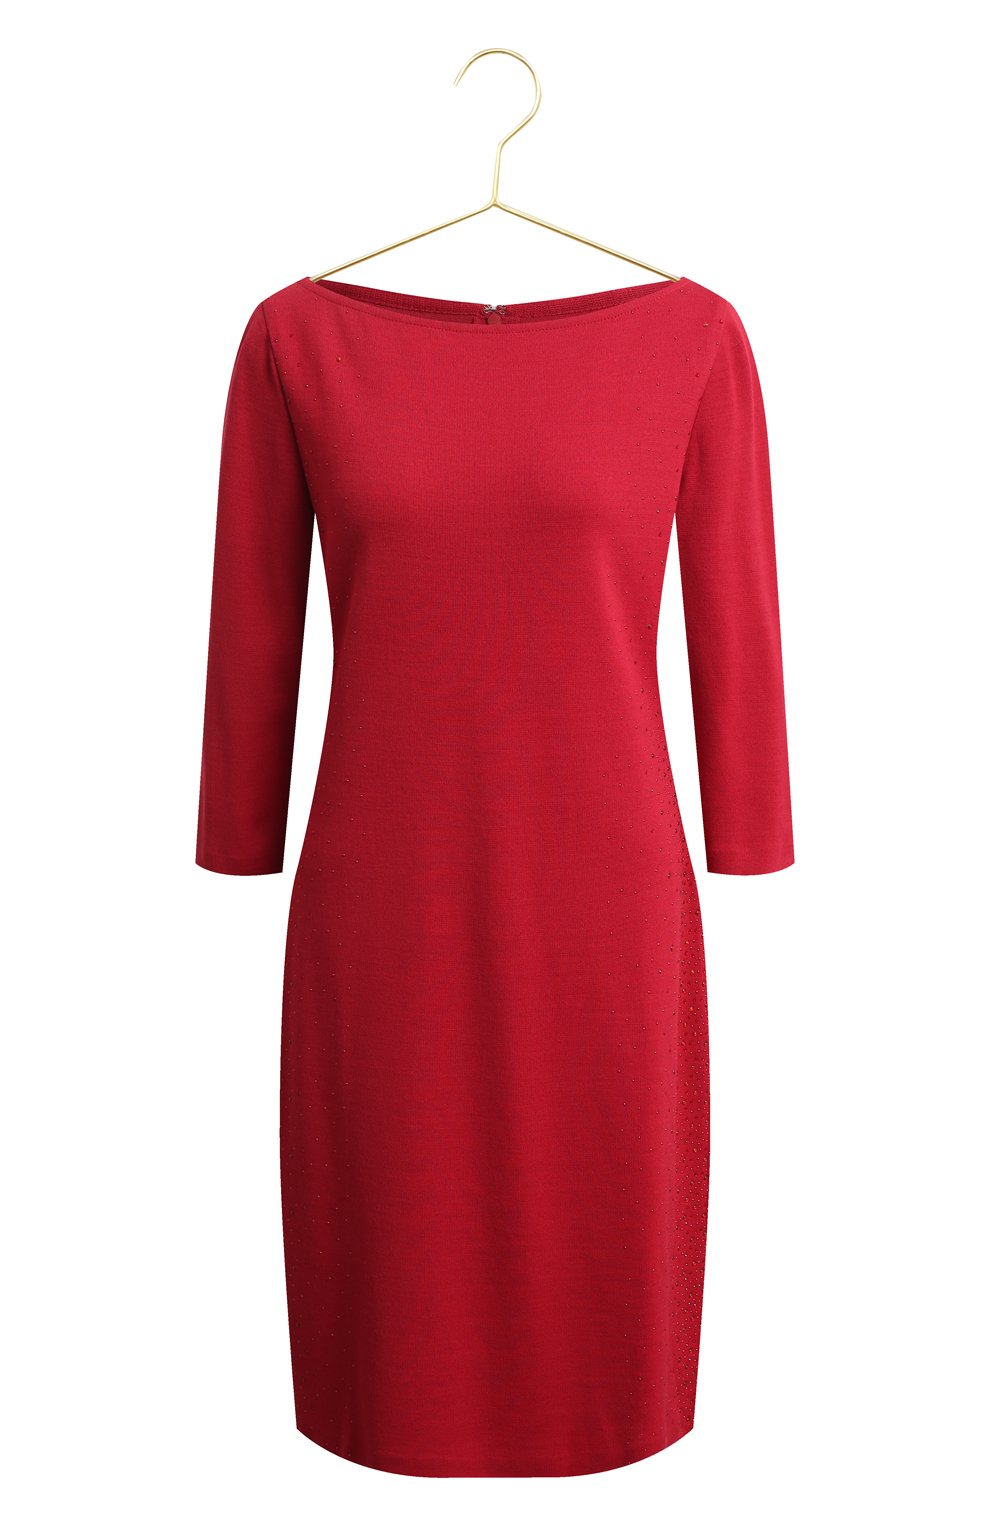 Платье из шерсти и вискозы | St. John | Красный - 1